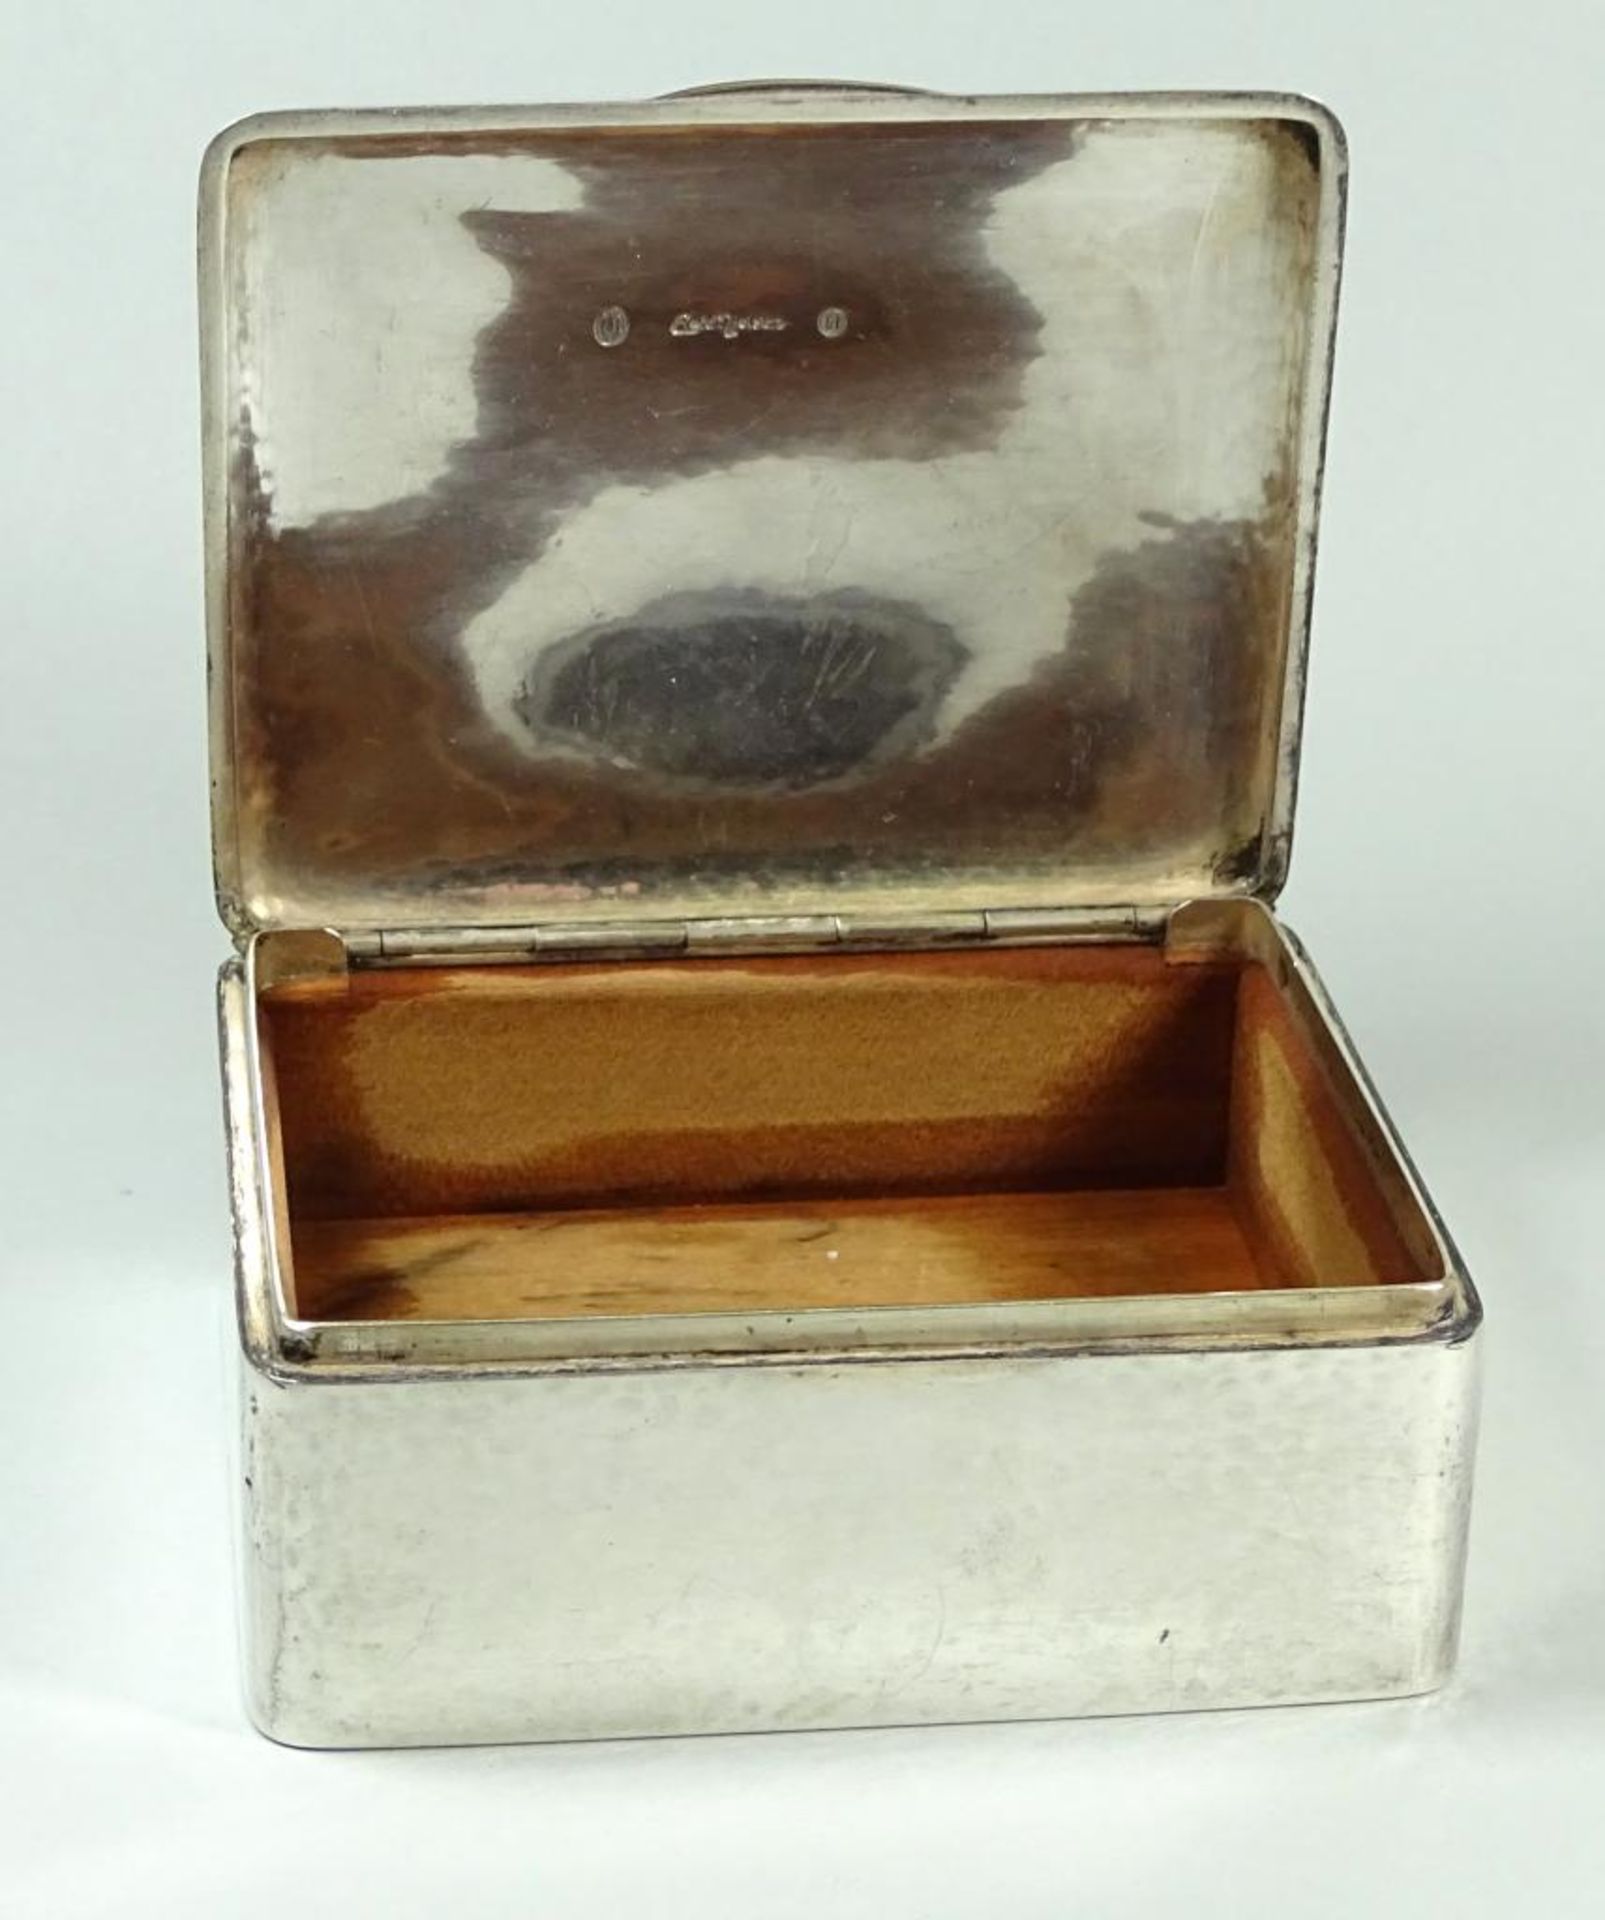 Zigaretten Dose von Evald Nielsen Dänemark,1927,330gr.,Hammerschlagdekor,H-4,5cm,11,5x9,2cm,1x Delle - Bild 3 aus 8